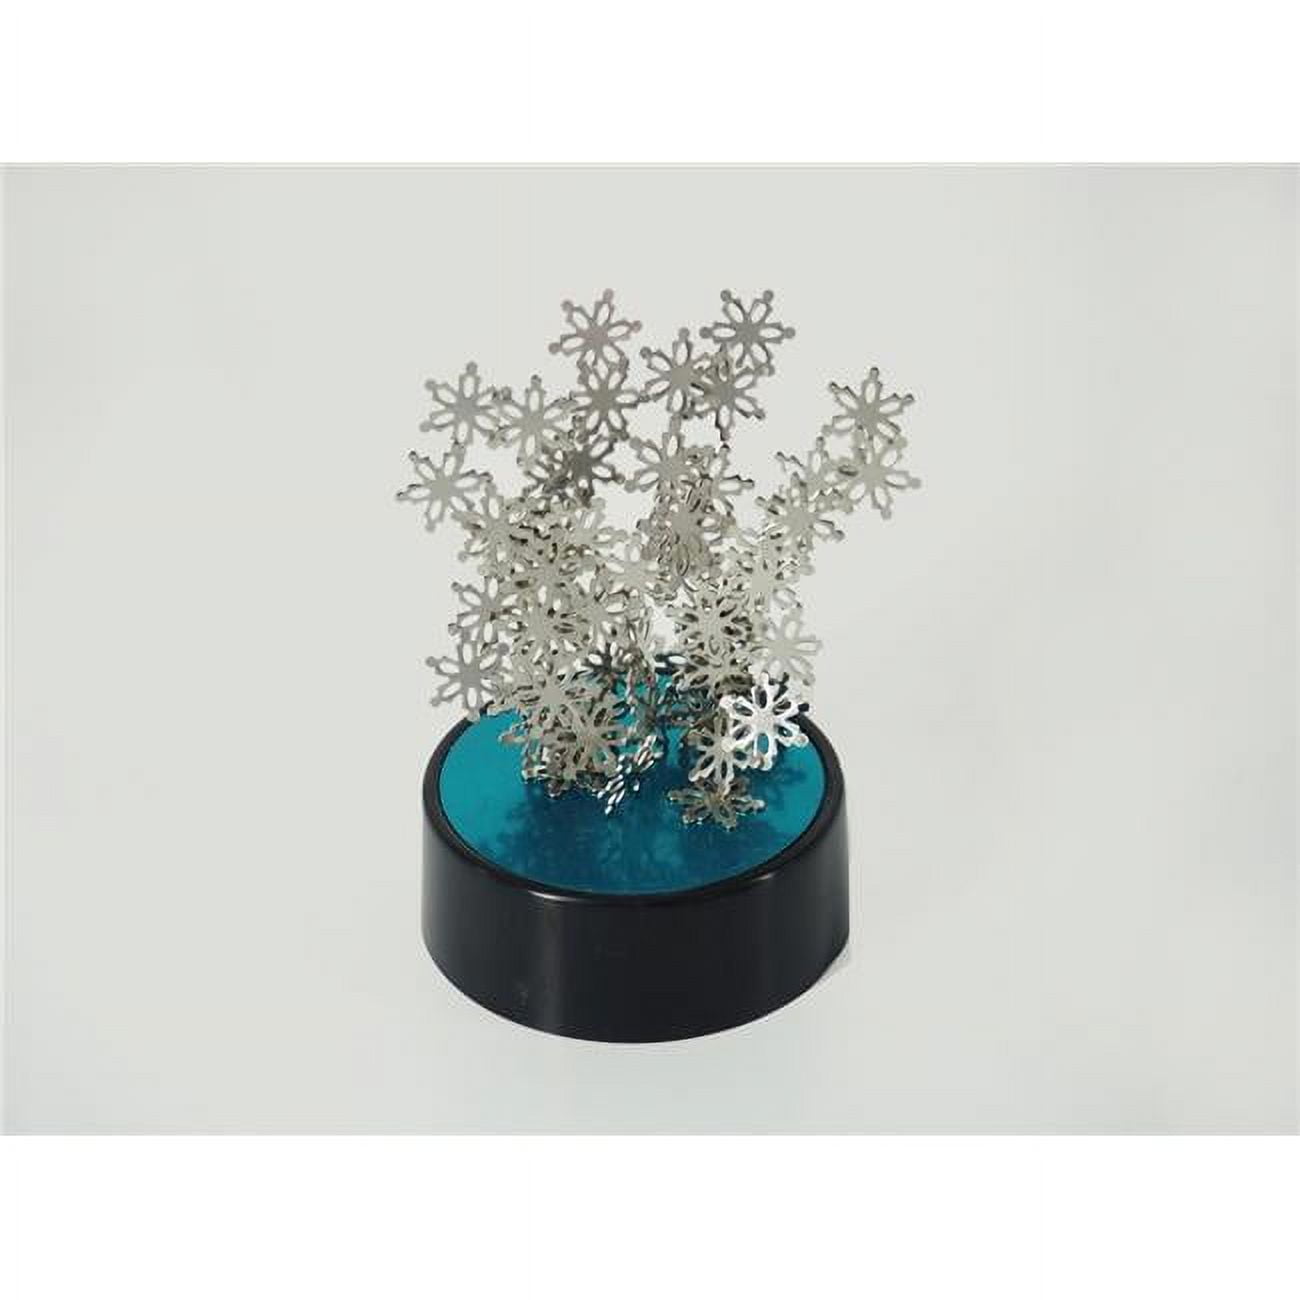 Tg106 Magnetic Desktop Sculpture - Snowflakes